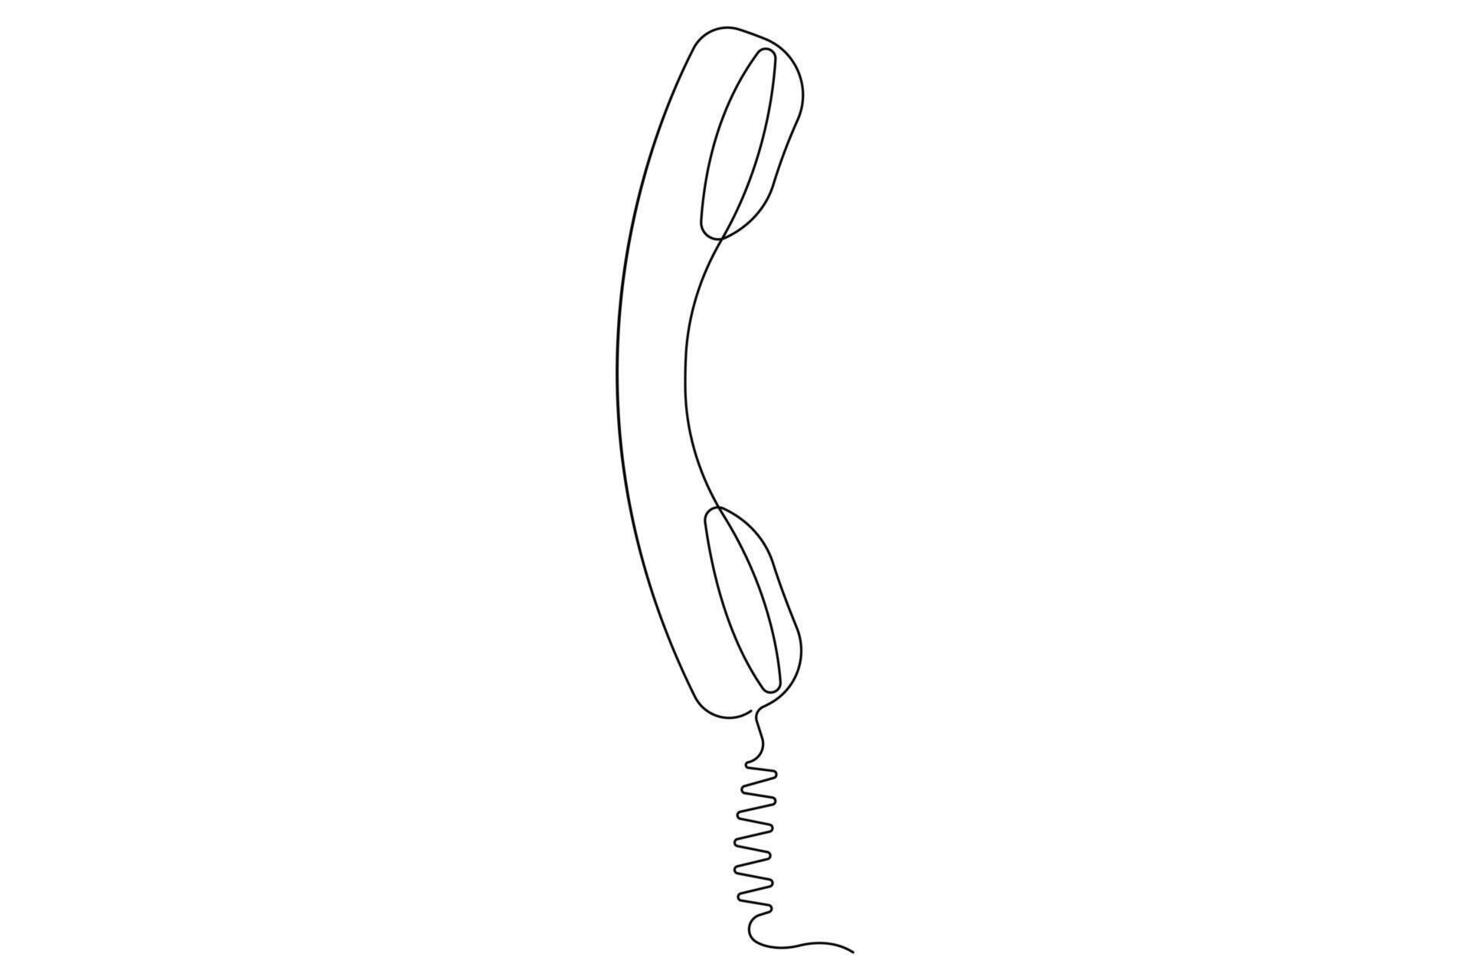 velho Telefone contínuo 1 linha arte desenhando do esboço vetor ilustração Projeto